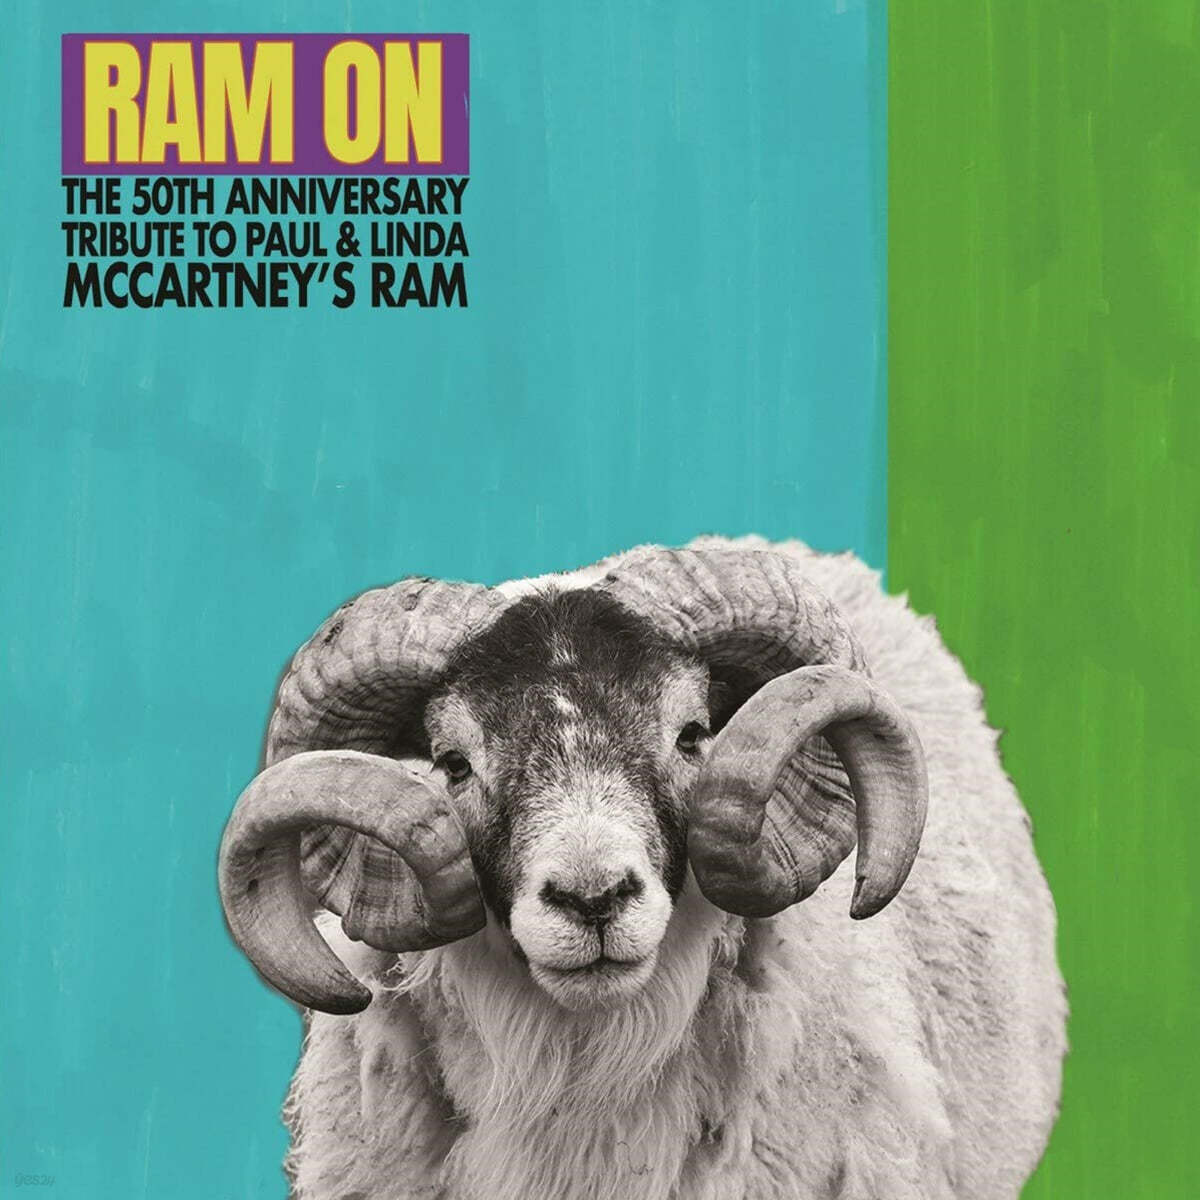 폴 매카트니 / 린다 매카트니 헌정 - 램 50주년 기념반 (Ram On - The 50th Anniversary Tribute To Paul & Linda McCartney's Ram) 